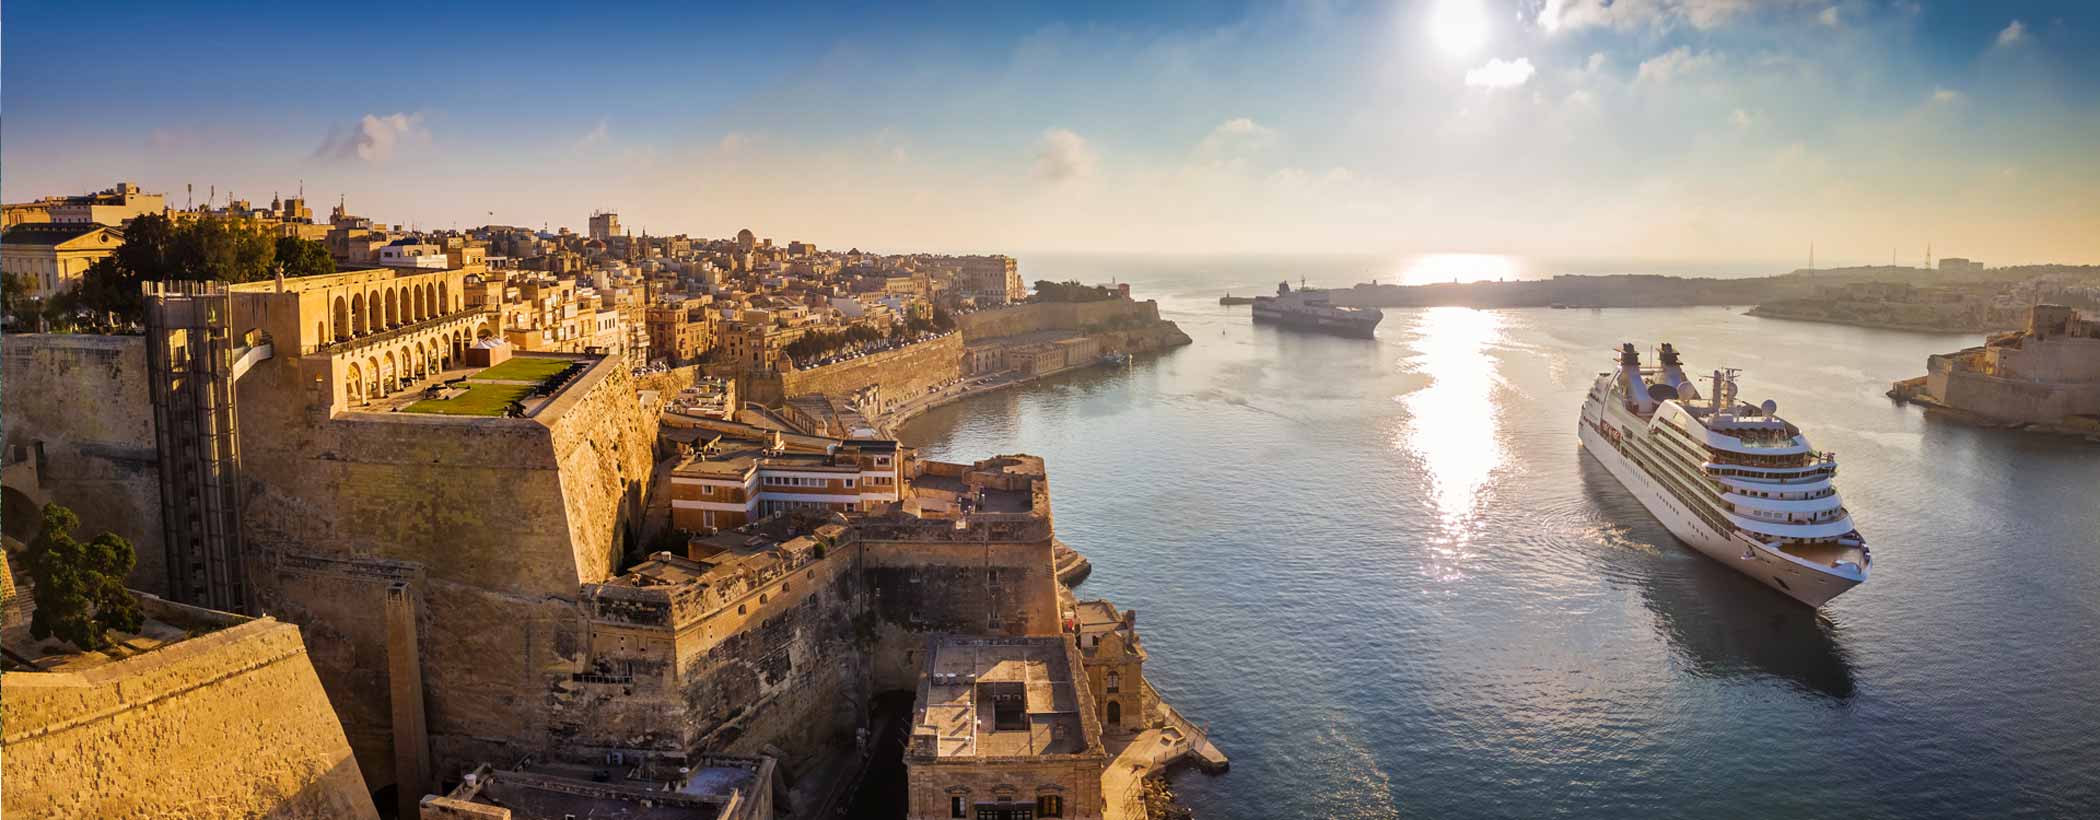 Städtereise Malta